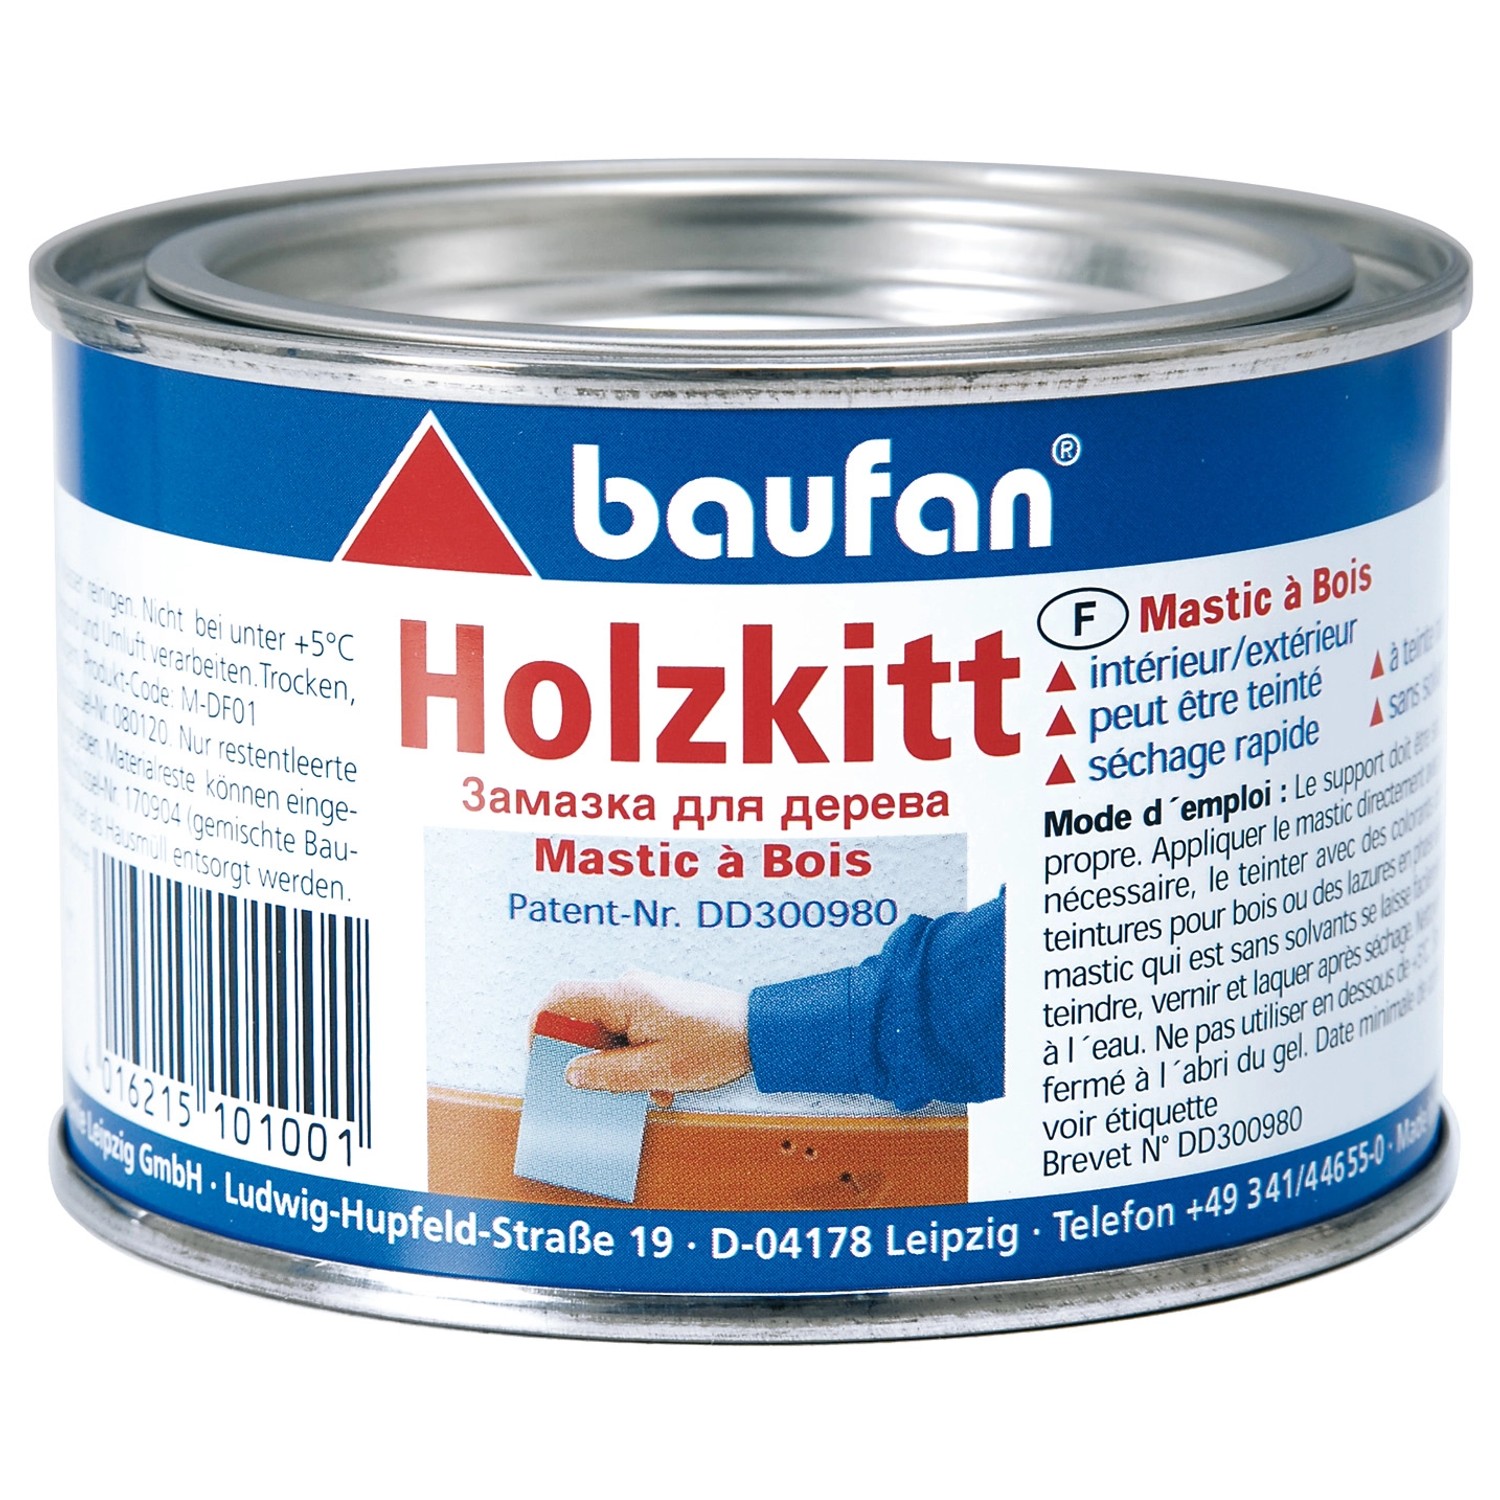 Baufan Holzkitt 200 g